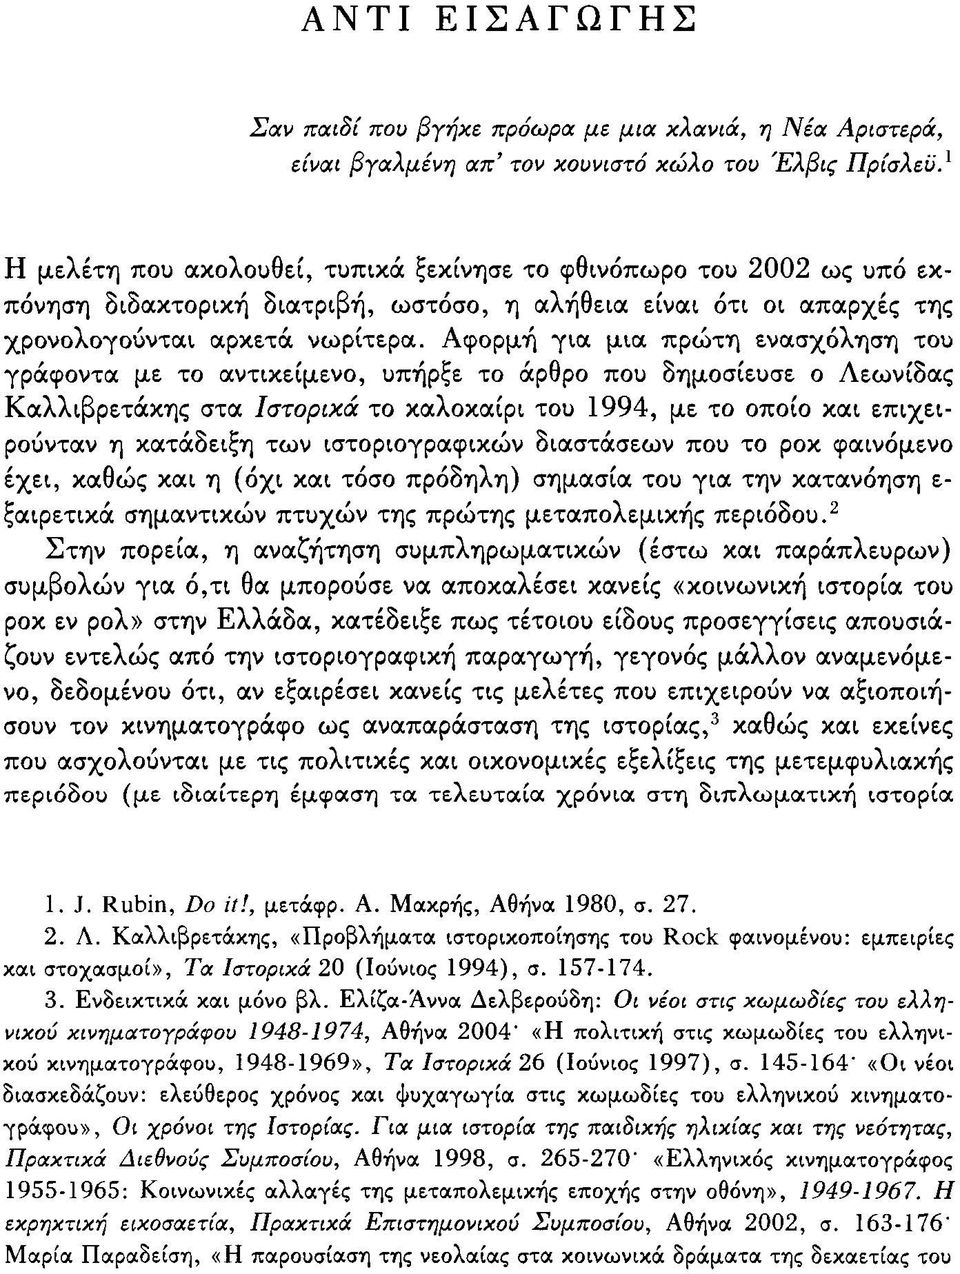 Αφορμή για μια πρώτη ενασχόληση του γράφοντα με το αντικείμενο, υπήρξε το άρθρο που δημοσίευσε ο Λεωνίδας Καλλιβρετάκης στα Ιστορικά το καλοκαίρι του 1994, με το οποίο και επιχειρούνταν η κατάδειξη